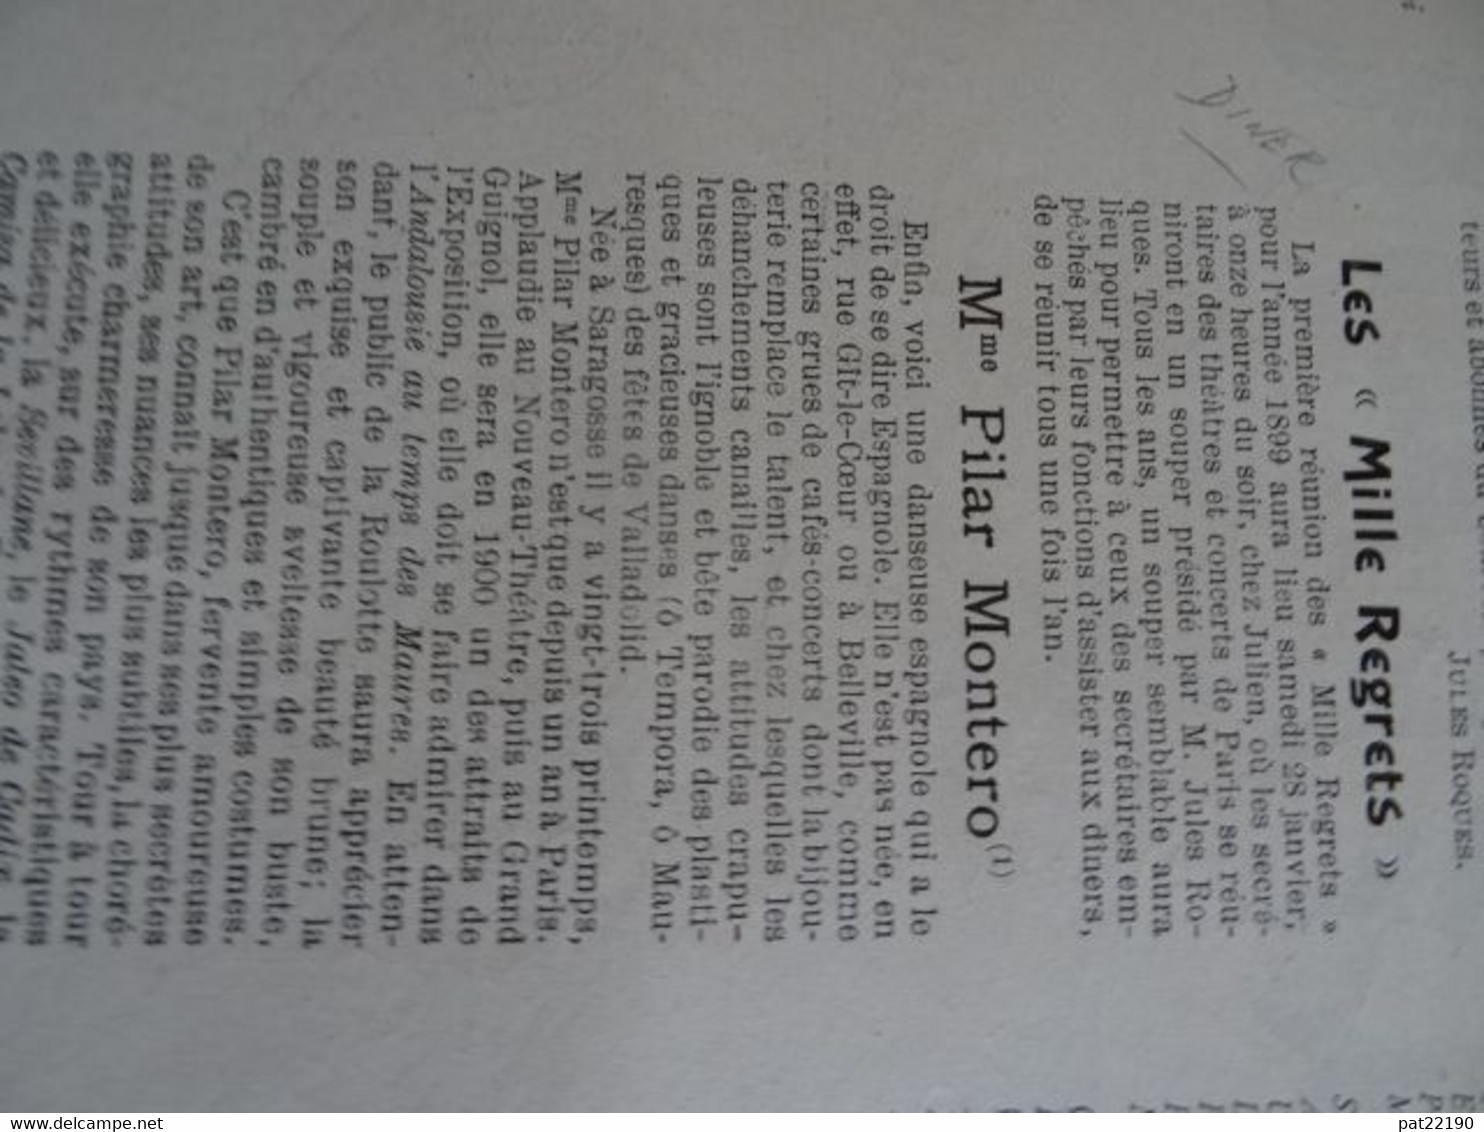 Revue le courrier Français 1899 Willette Botrel Diner menu 1000 regrets H Sebille René Pean Phil May artiste Anglais